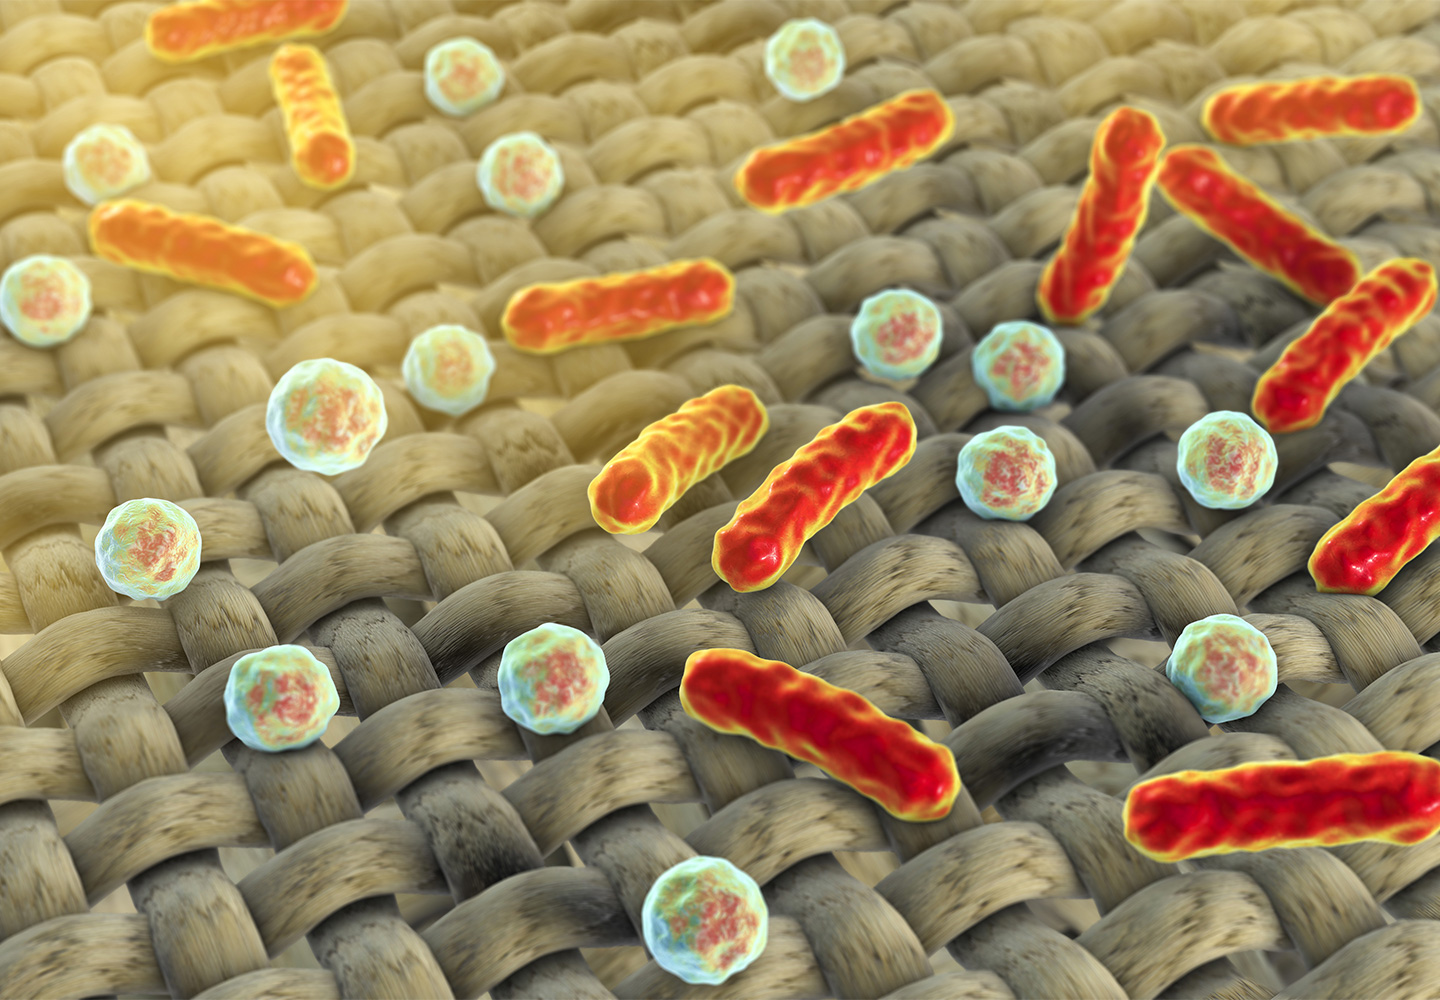 Imagen microscópica de bacterias en la ropa